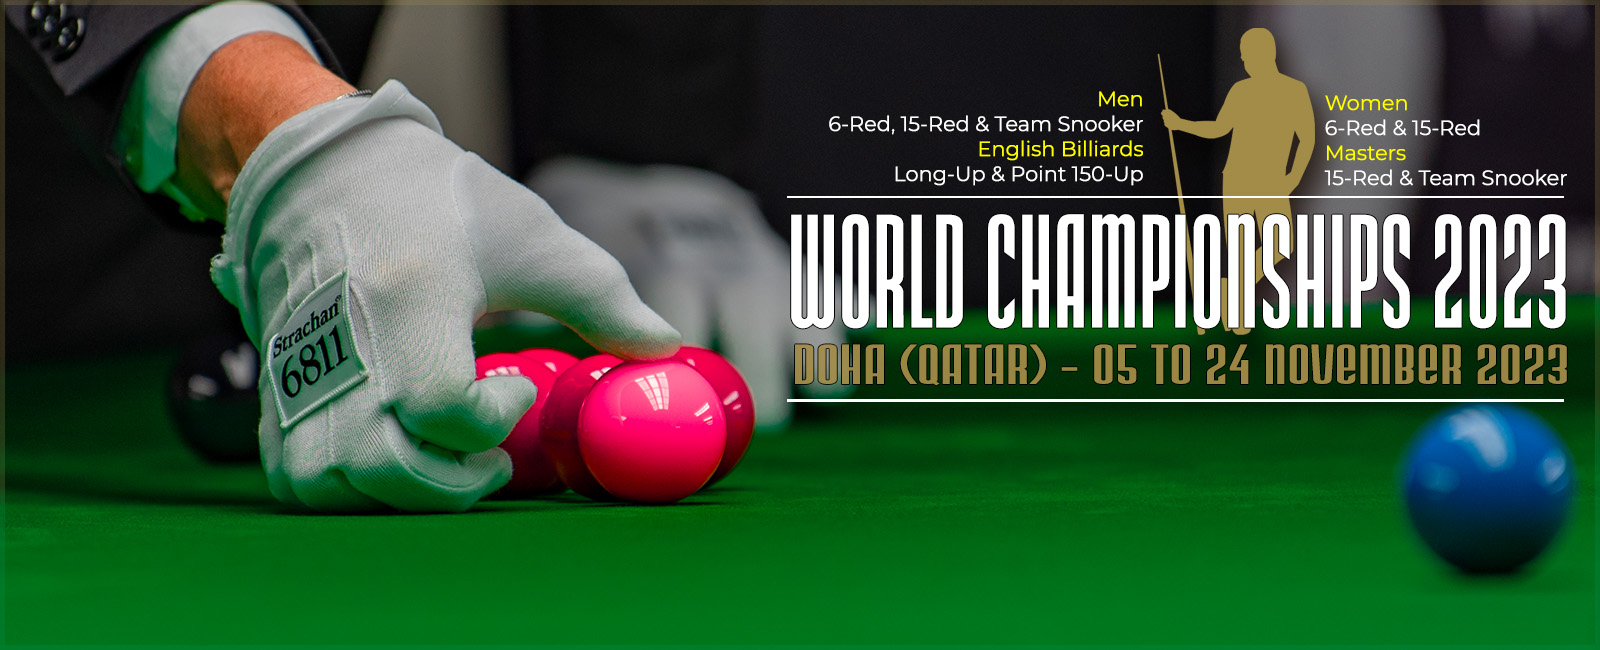 Women's Snooker World Cup 2023  Tournament Information - World Women's  Snooker